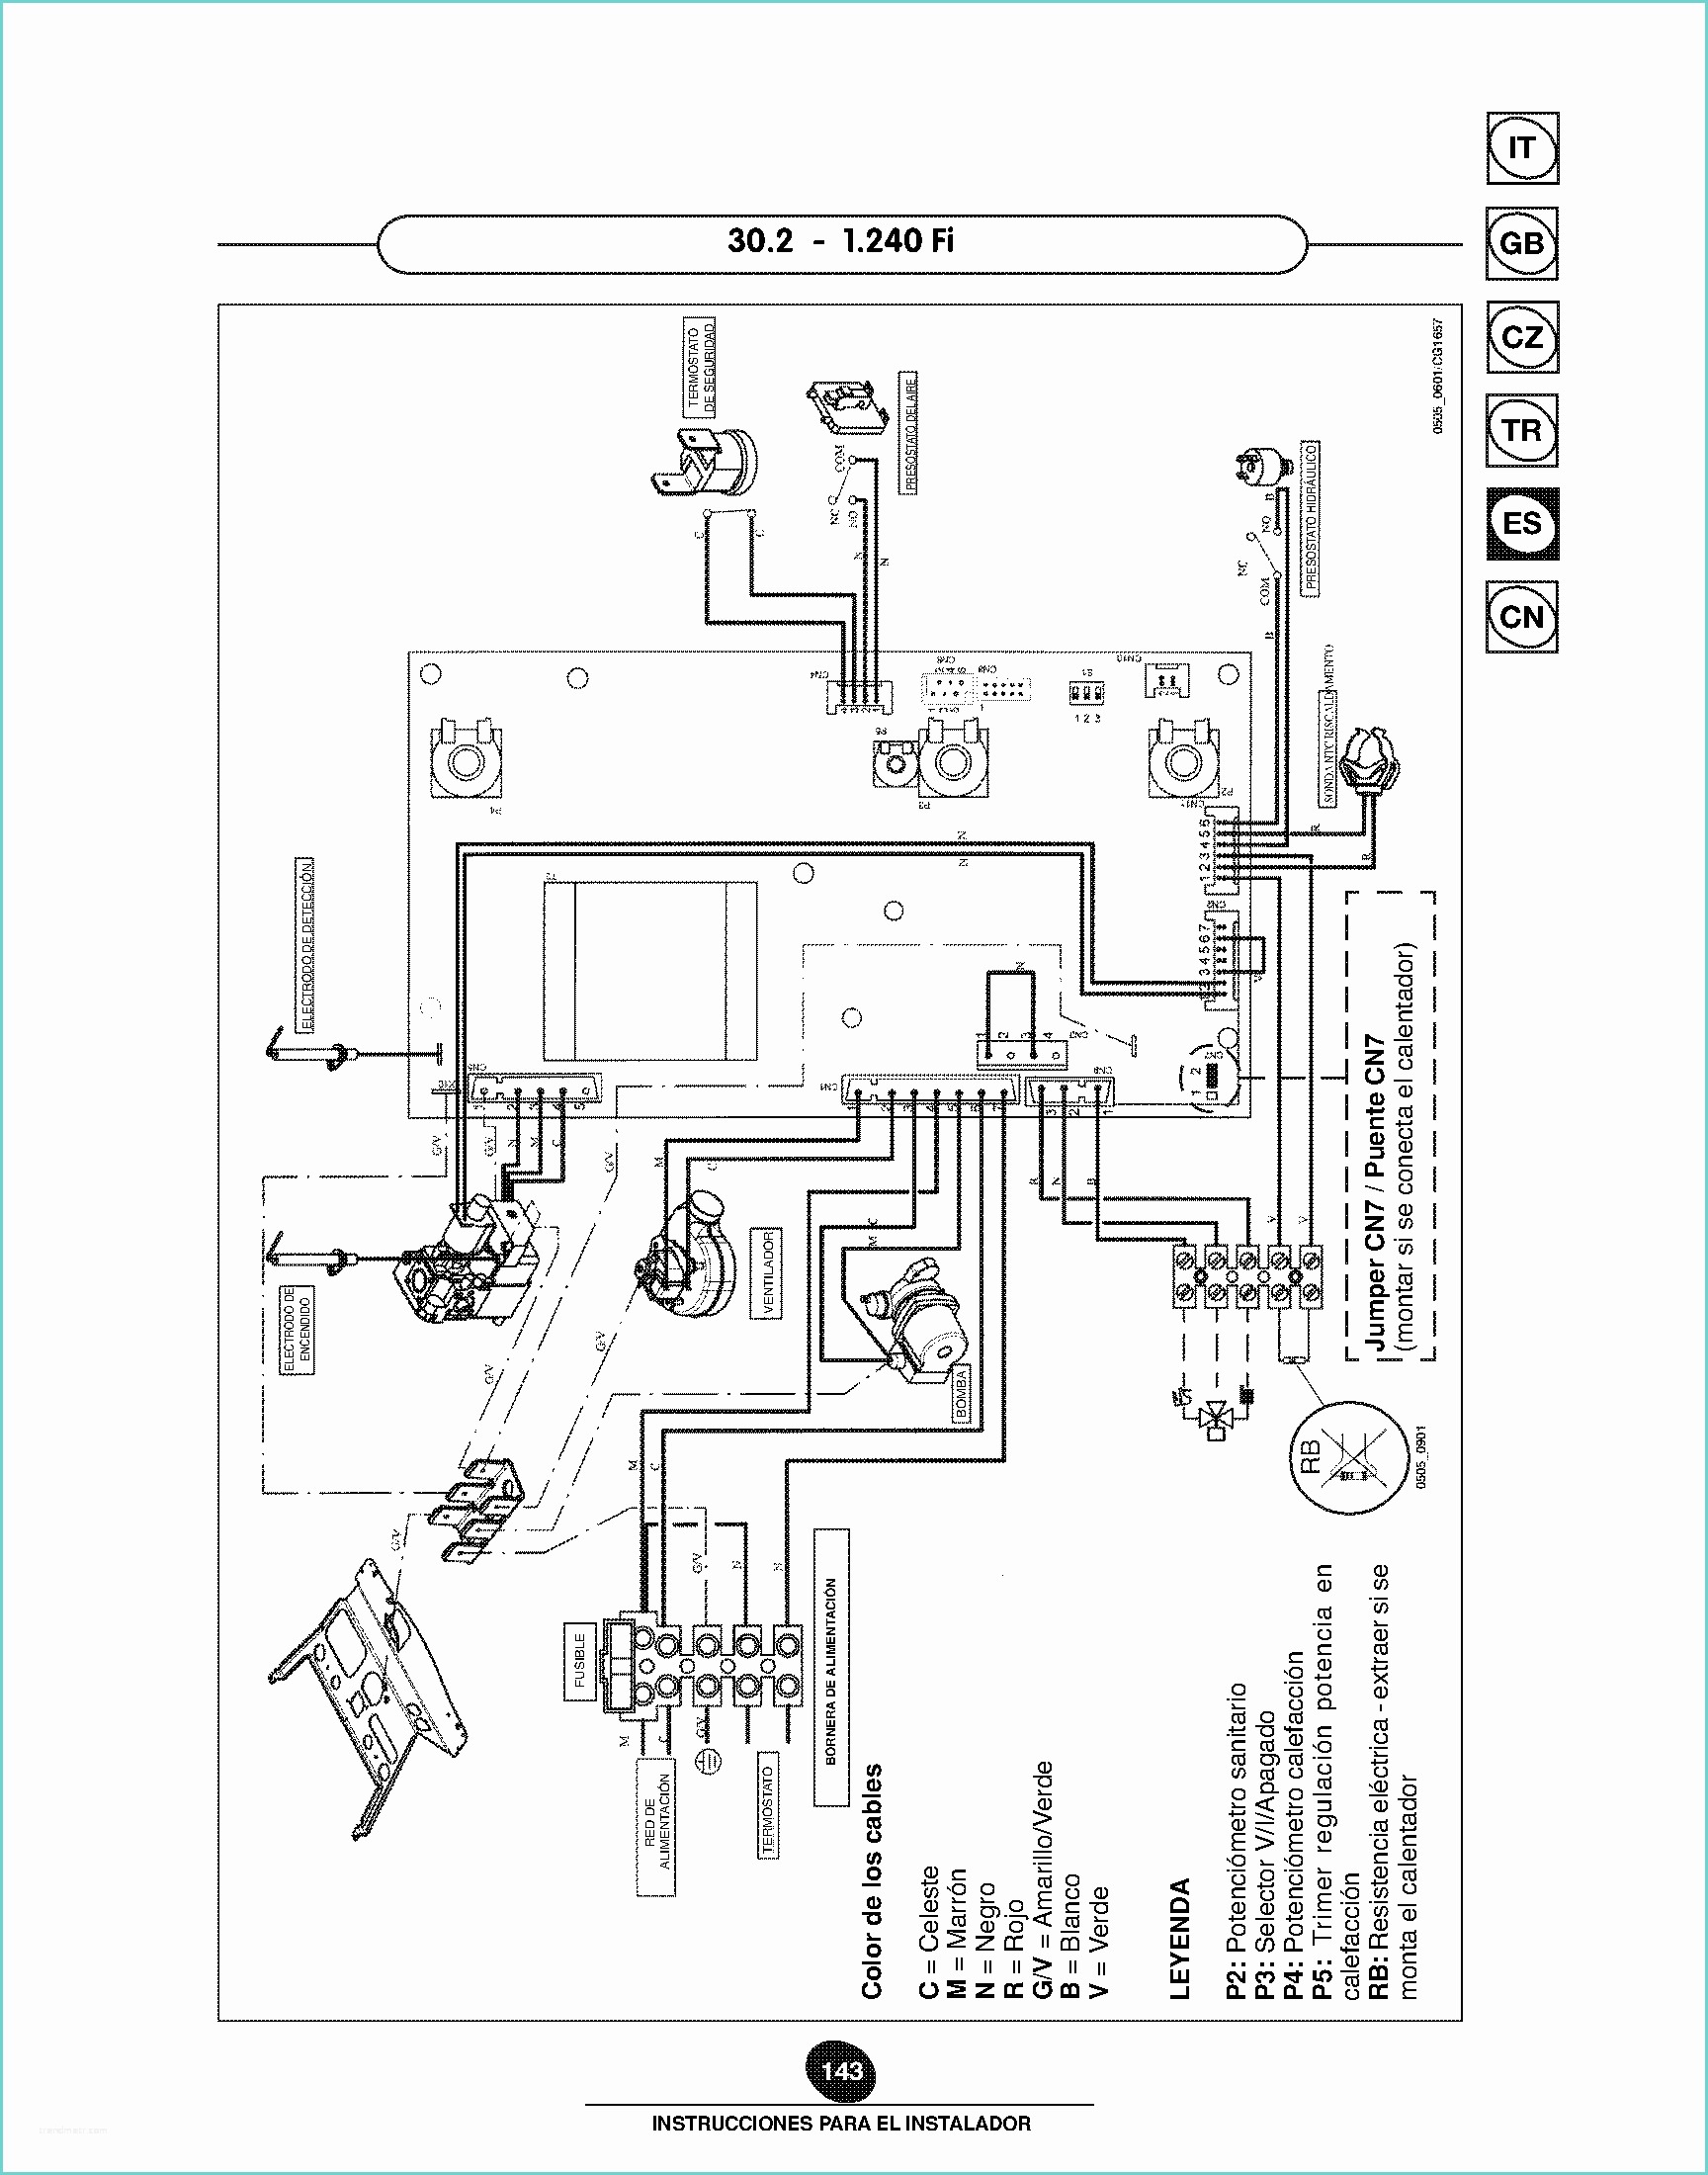 Baxi Eco3 Compact Manual solucionado Caldera Baxi Eco 3 Pact 1240 Fi Yoreparo